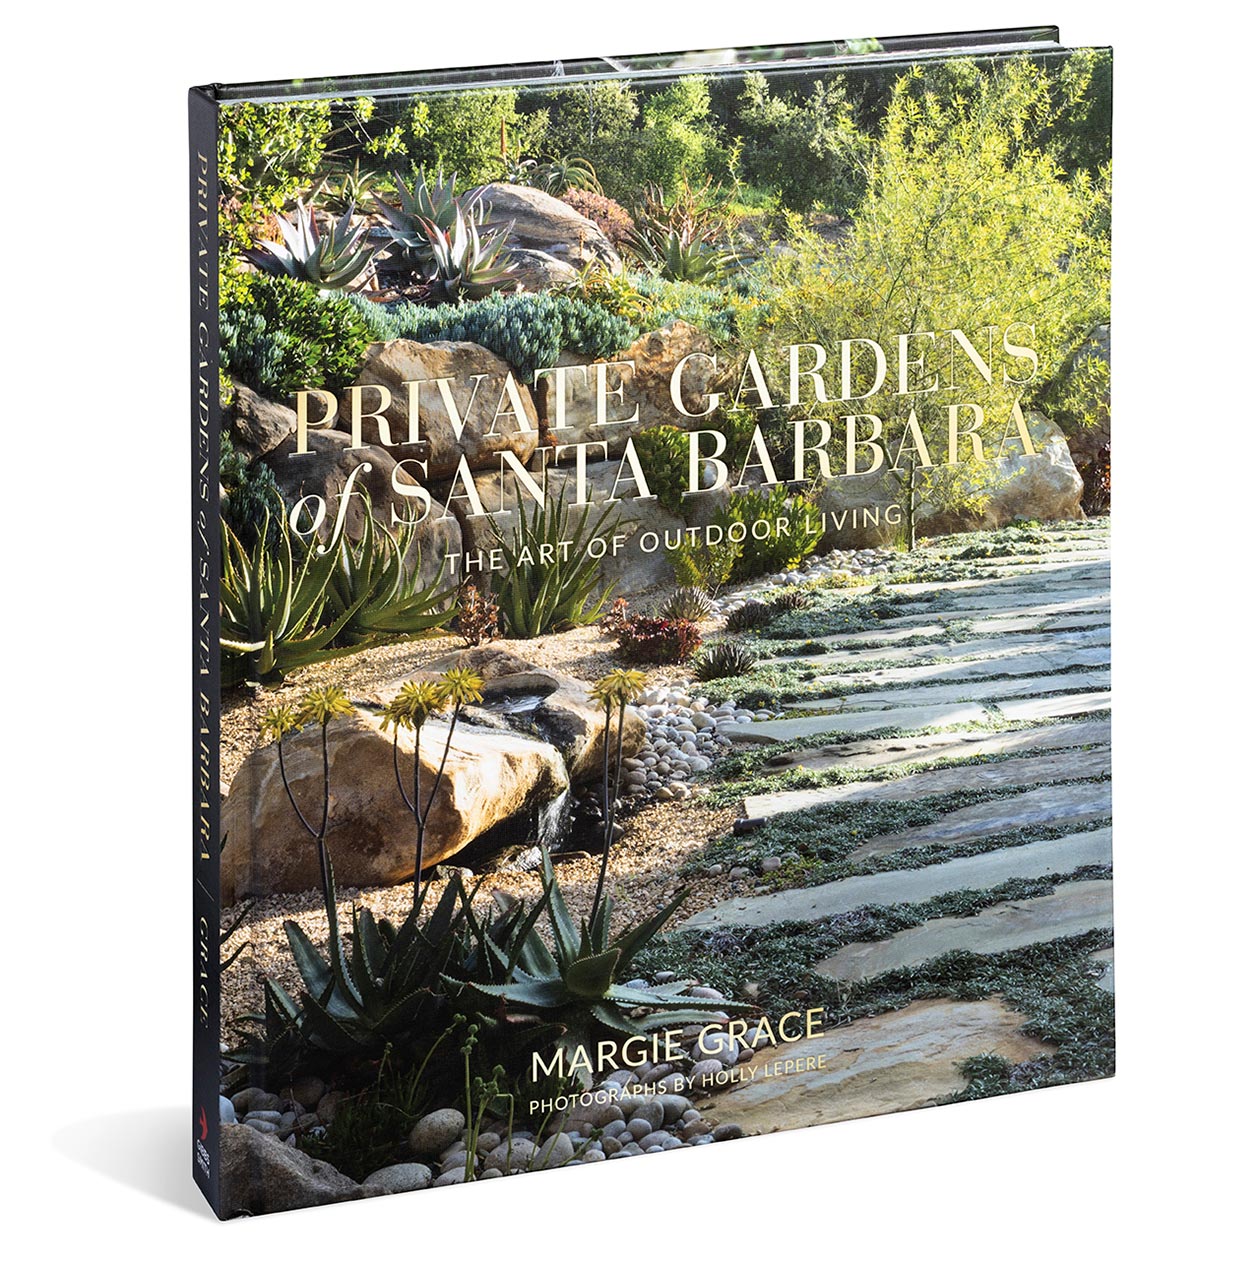 Private Gardens of Santa Barbara